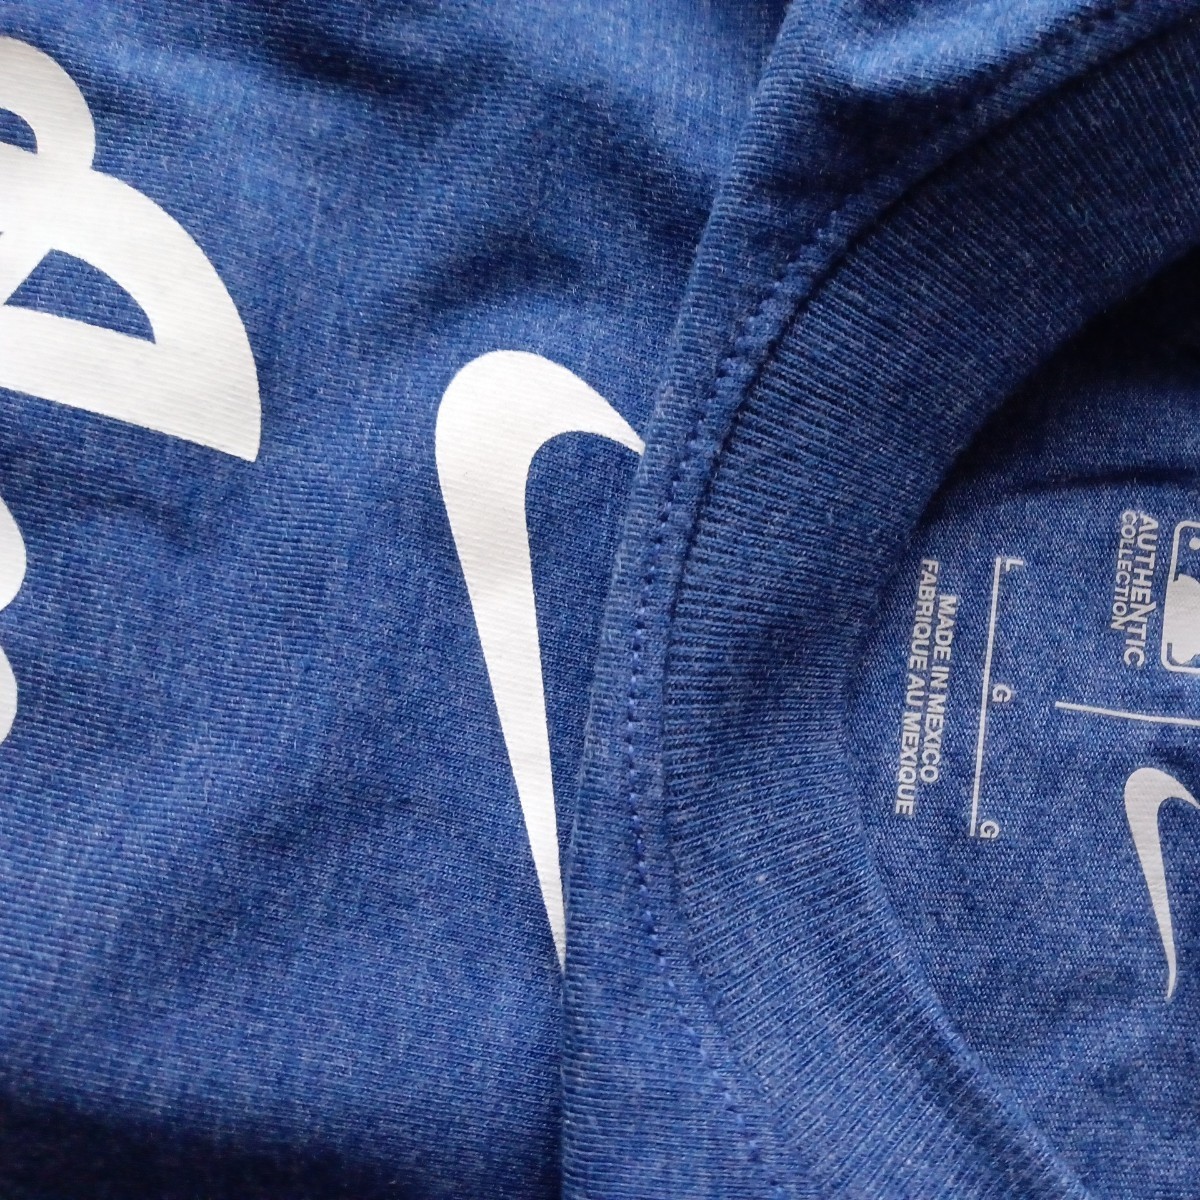 大谷翔平 Men's Lサイズ Los Angeles Dodgers Nike Authentic T-Shirt 選手着用モデル 定価40ドル 正規品 1円オークションの画像6